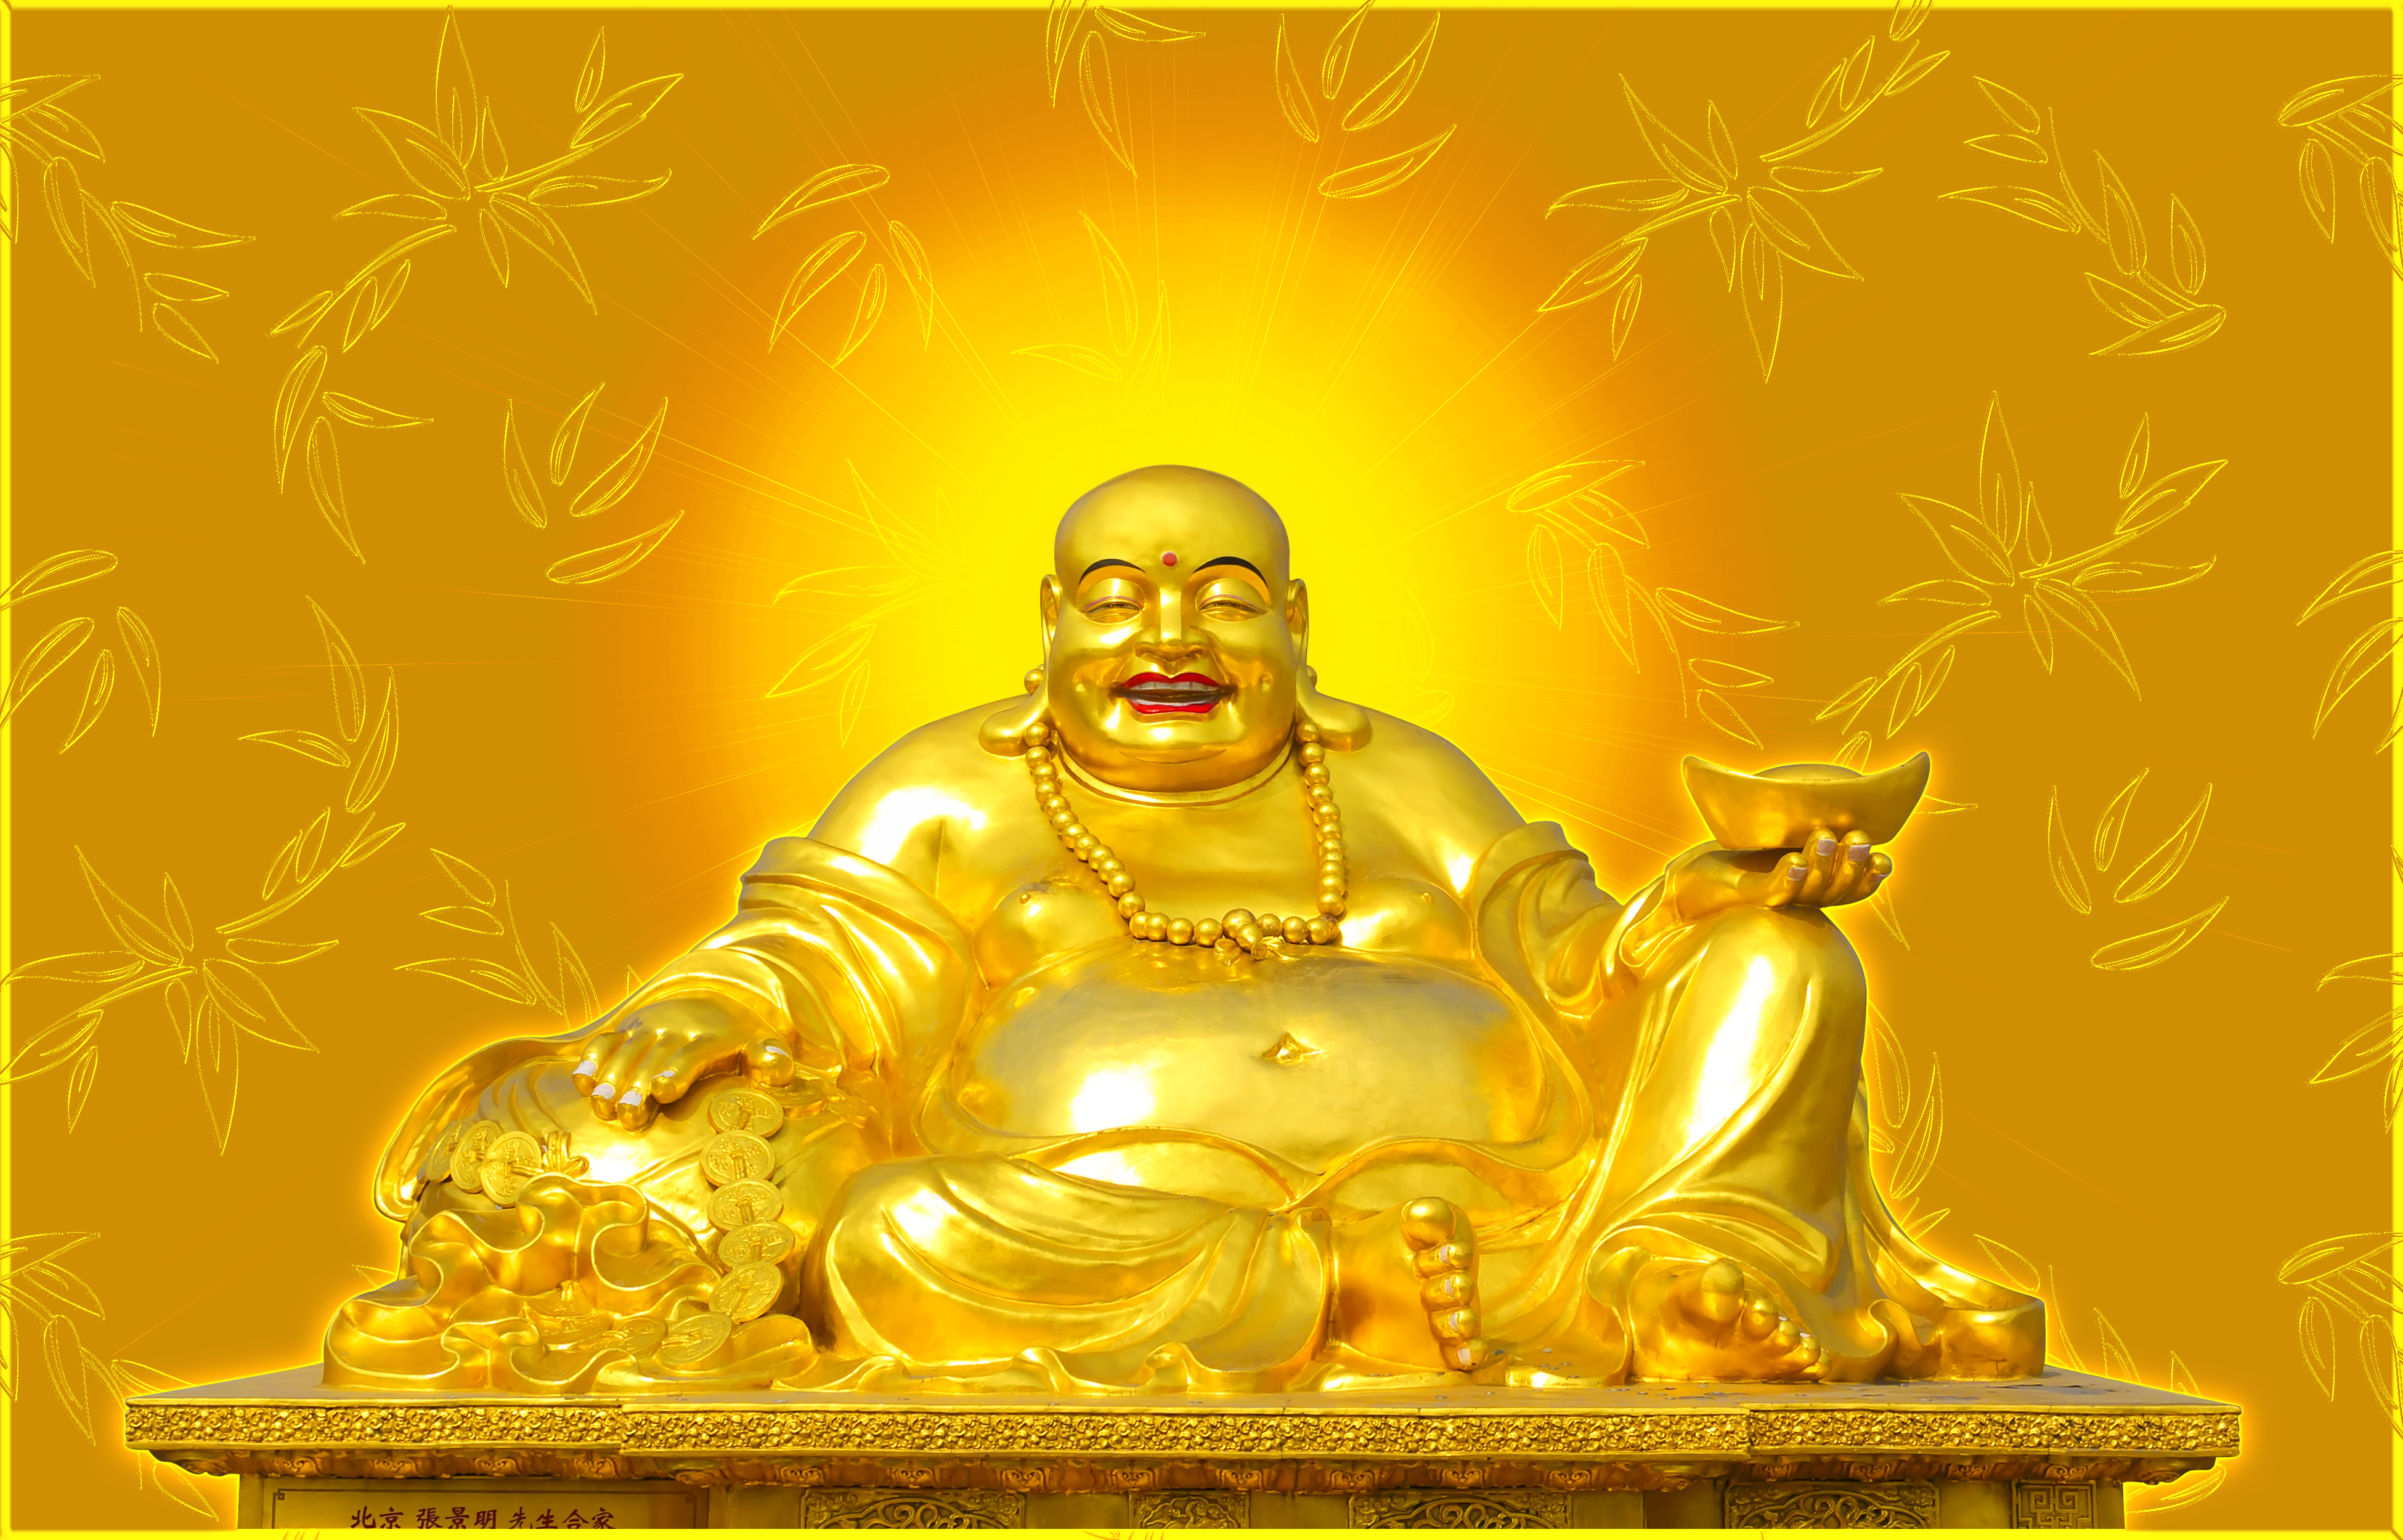 Quan The Am Guanyin Buddha: Nếu bạn yêu thích tôn giáo Phật giáo hoặc muốn tìm hiểu thêm về đạo Phật, hãy xem hình ảnh của đại phật Quan Thế Âm (Guanyin). Đầy nghĩa cảm và tràn đầy sức sống, hình ảnh này sẽ khiến bạn cảm thấy an tâm và nhẹ nhàng hơn.